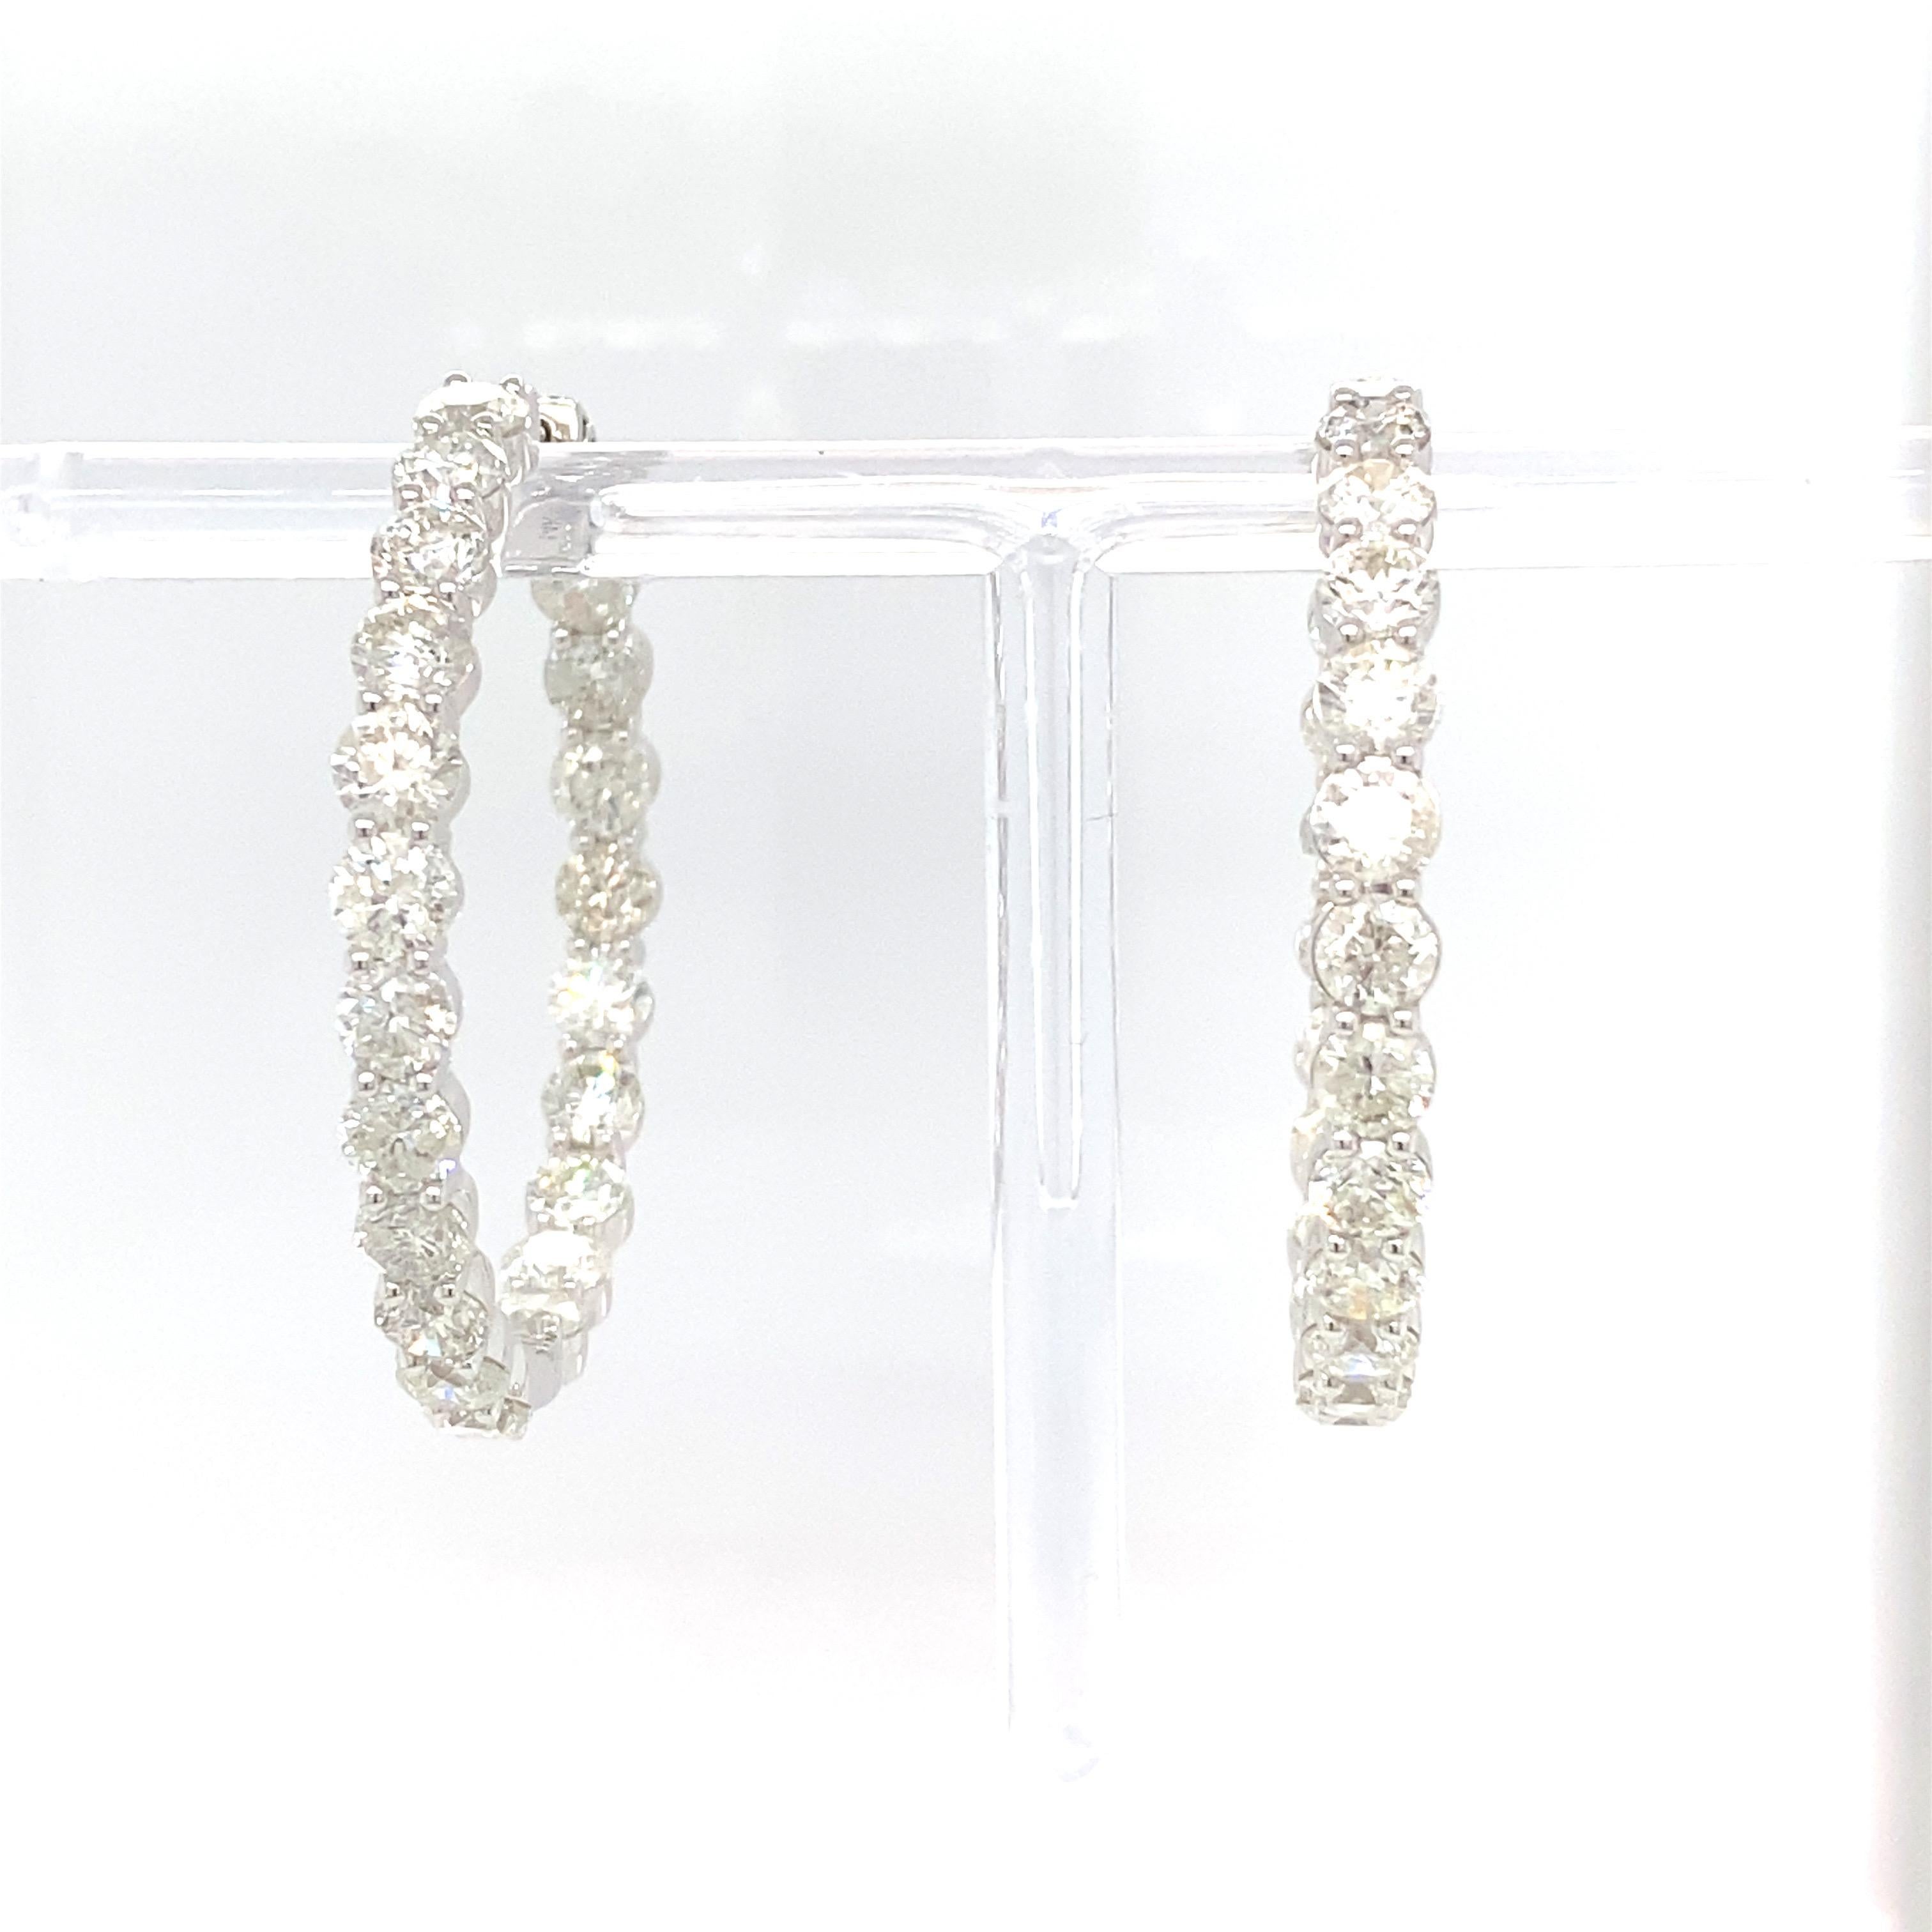 Des diamants blancs taillés en brillant sont minutieusement travaillés pour créer ces élégantes boucles d'oreilles intérieures intemporelles. Il est serti en or blanc.
Diamant : 12,88 carats
Or : 14K blanc 